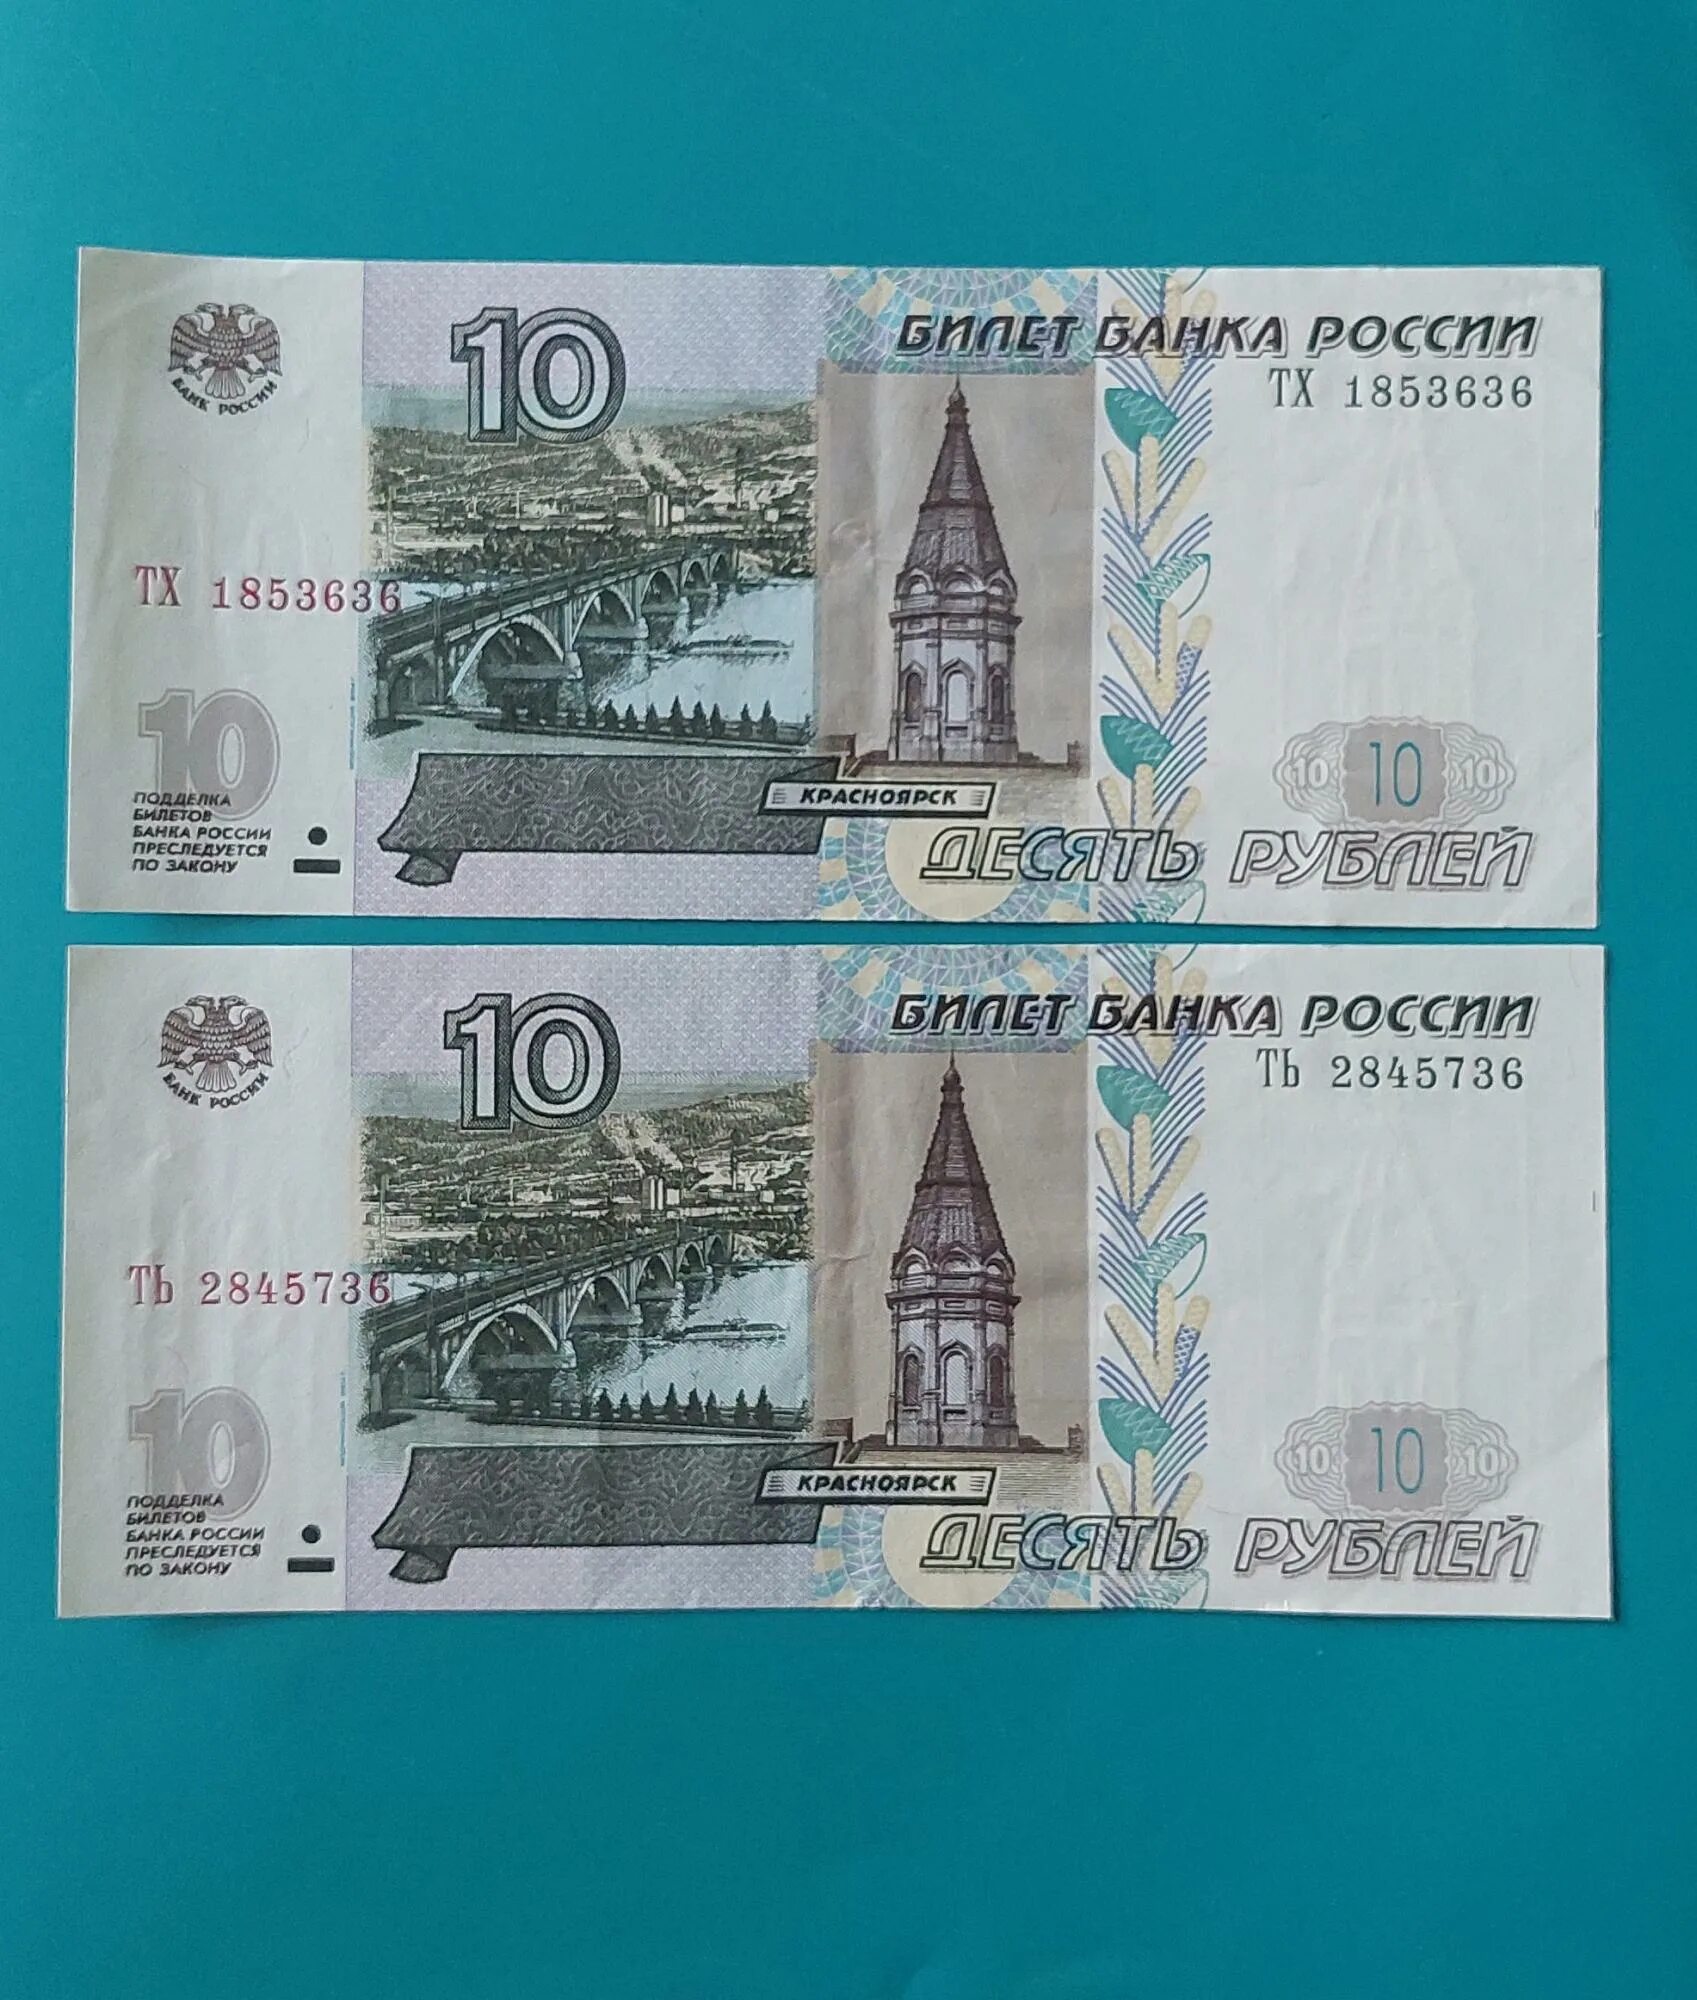 10 Рублей бумажные. 10 Рублей банкнота. Бумажная купюра 10 рублей 1997. Бумажная купюра 10 рублей 1997 года.